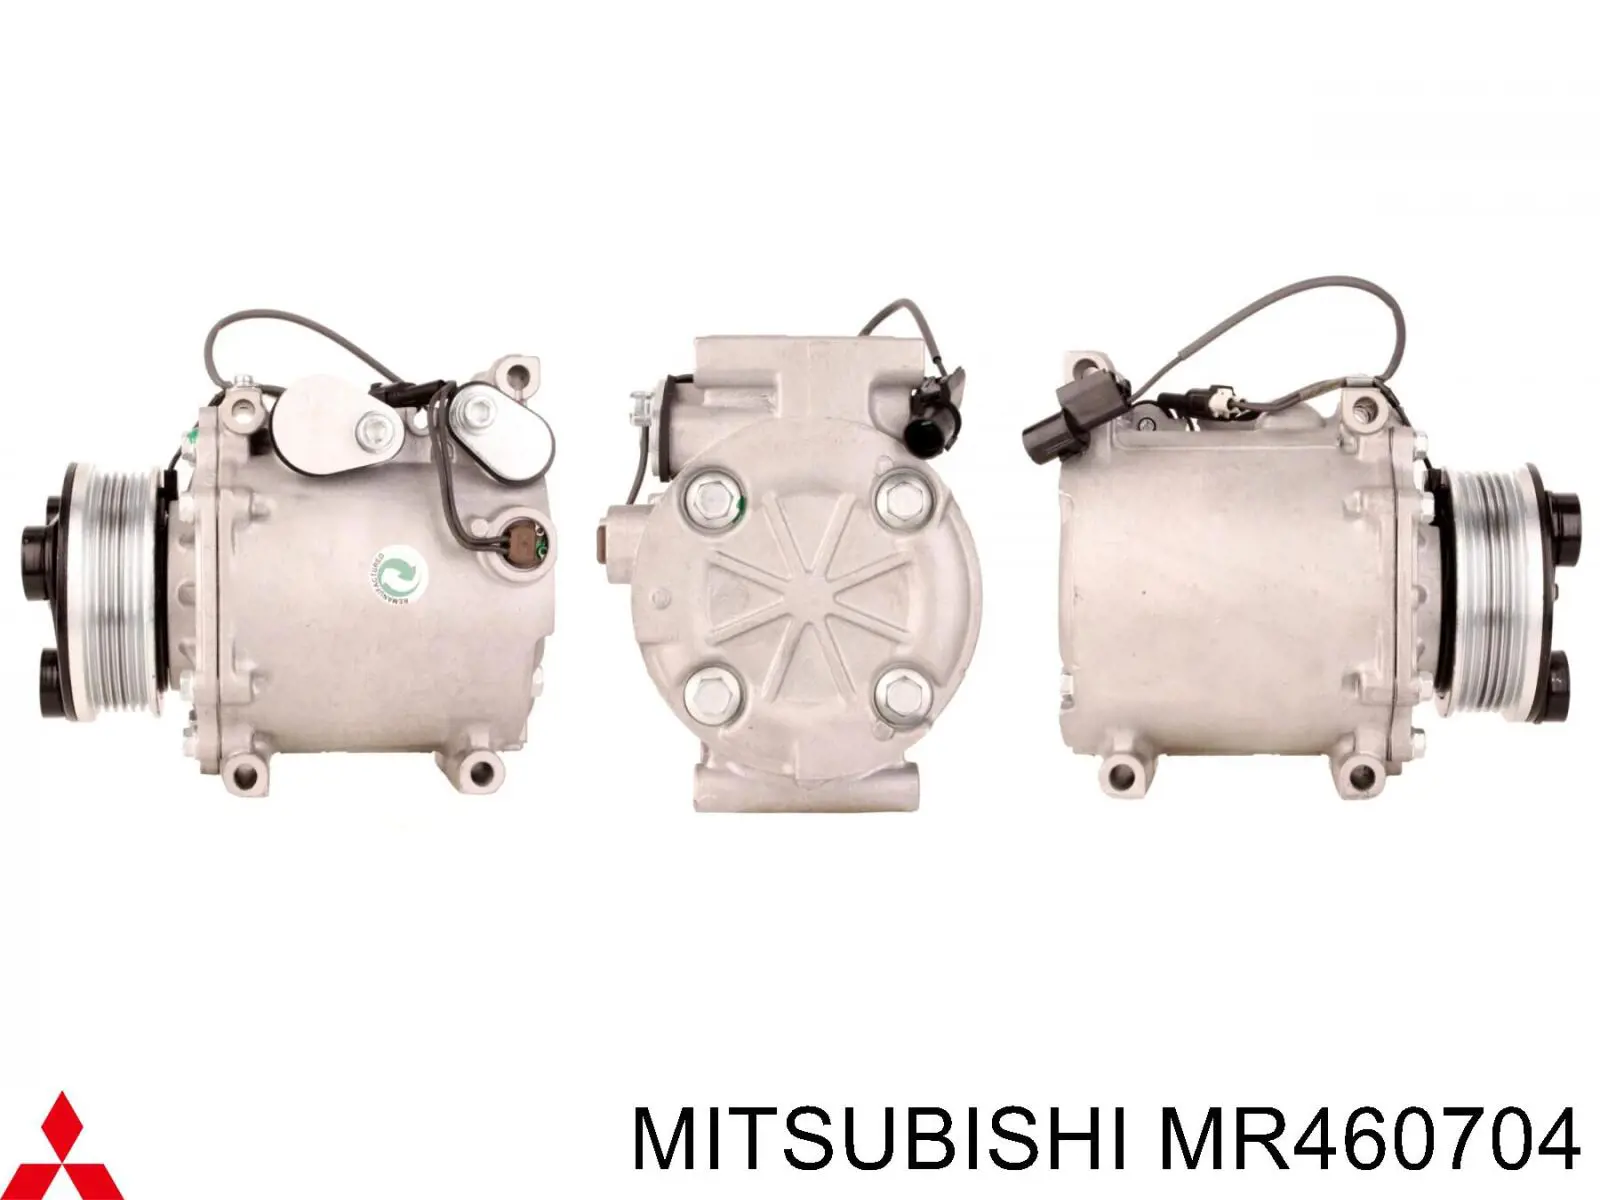 MR460704 Mitsubishi compresor de aire acondicionado